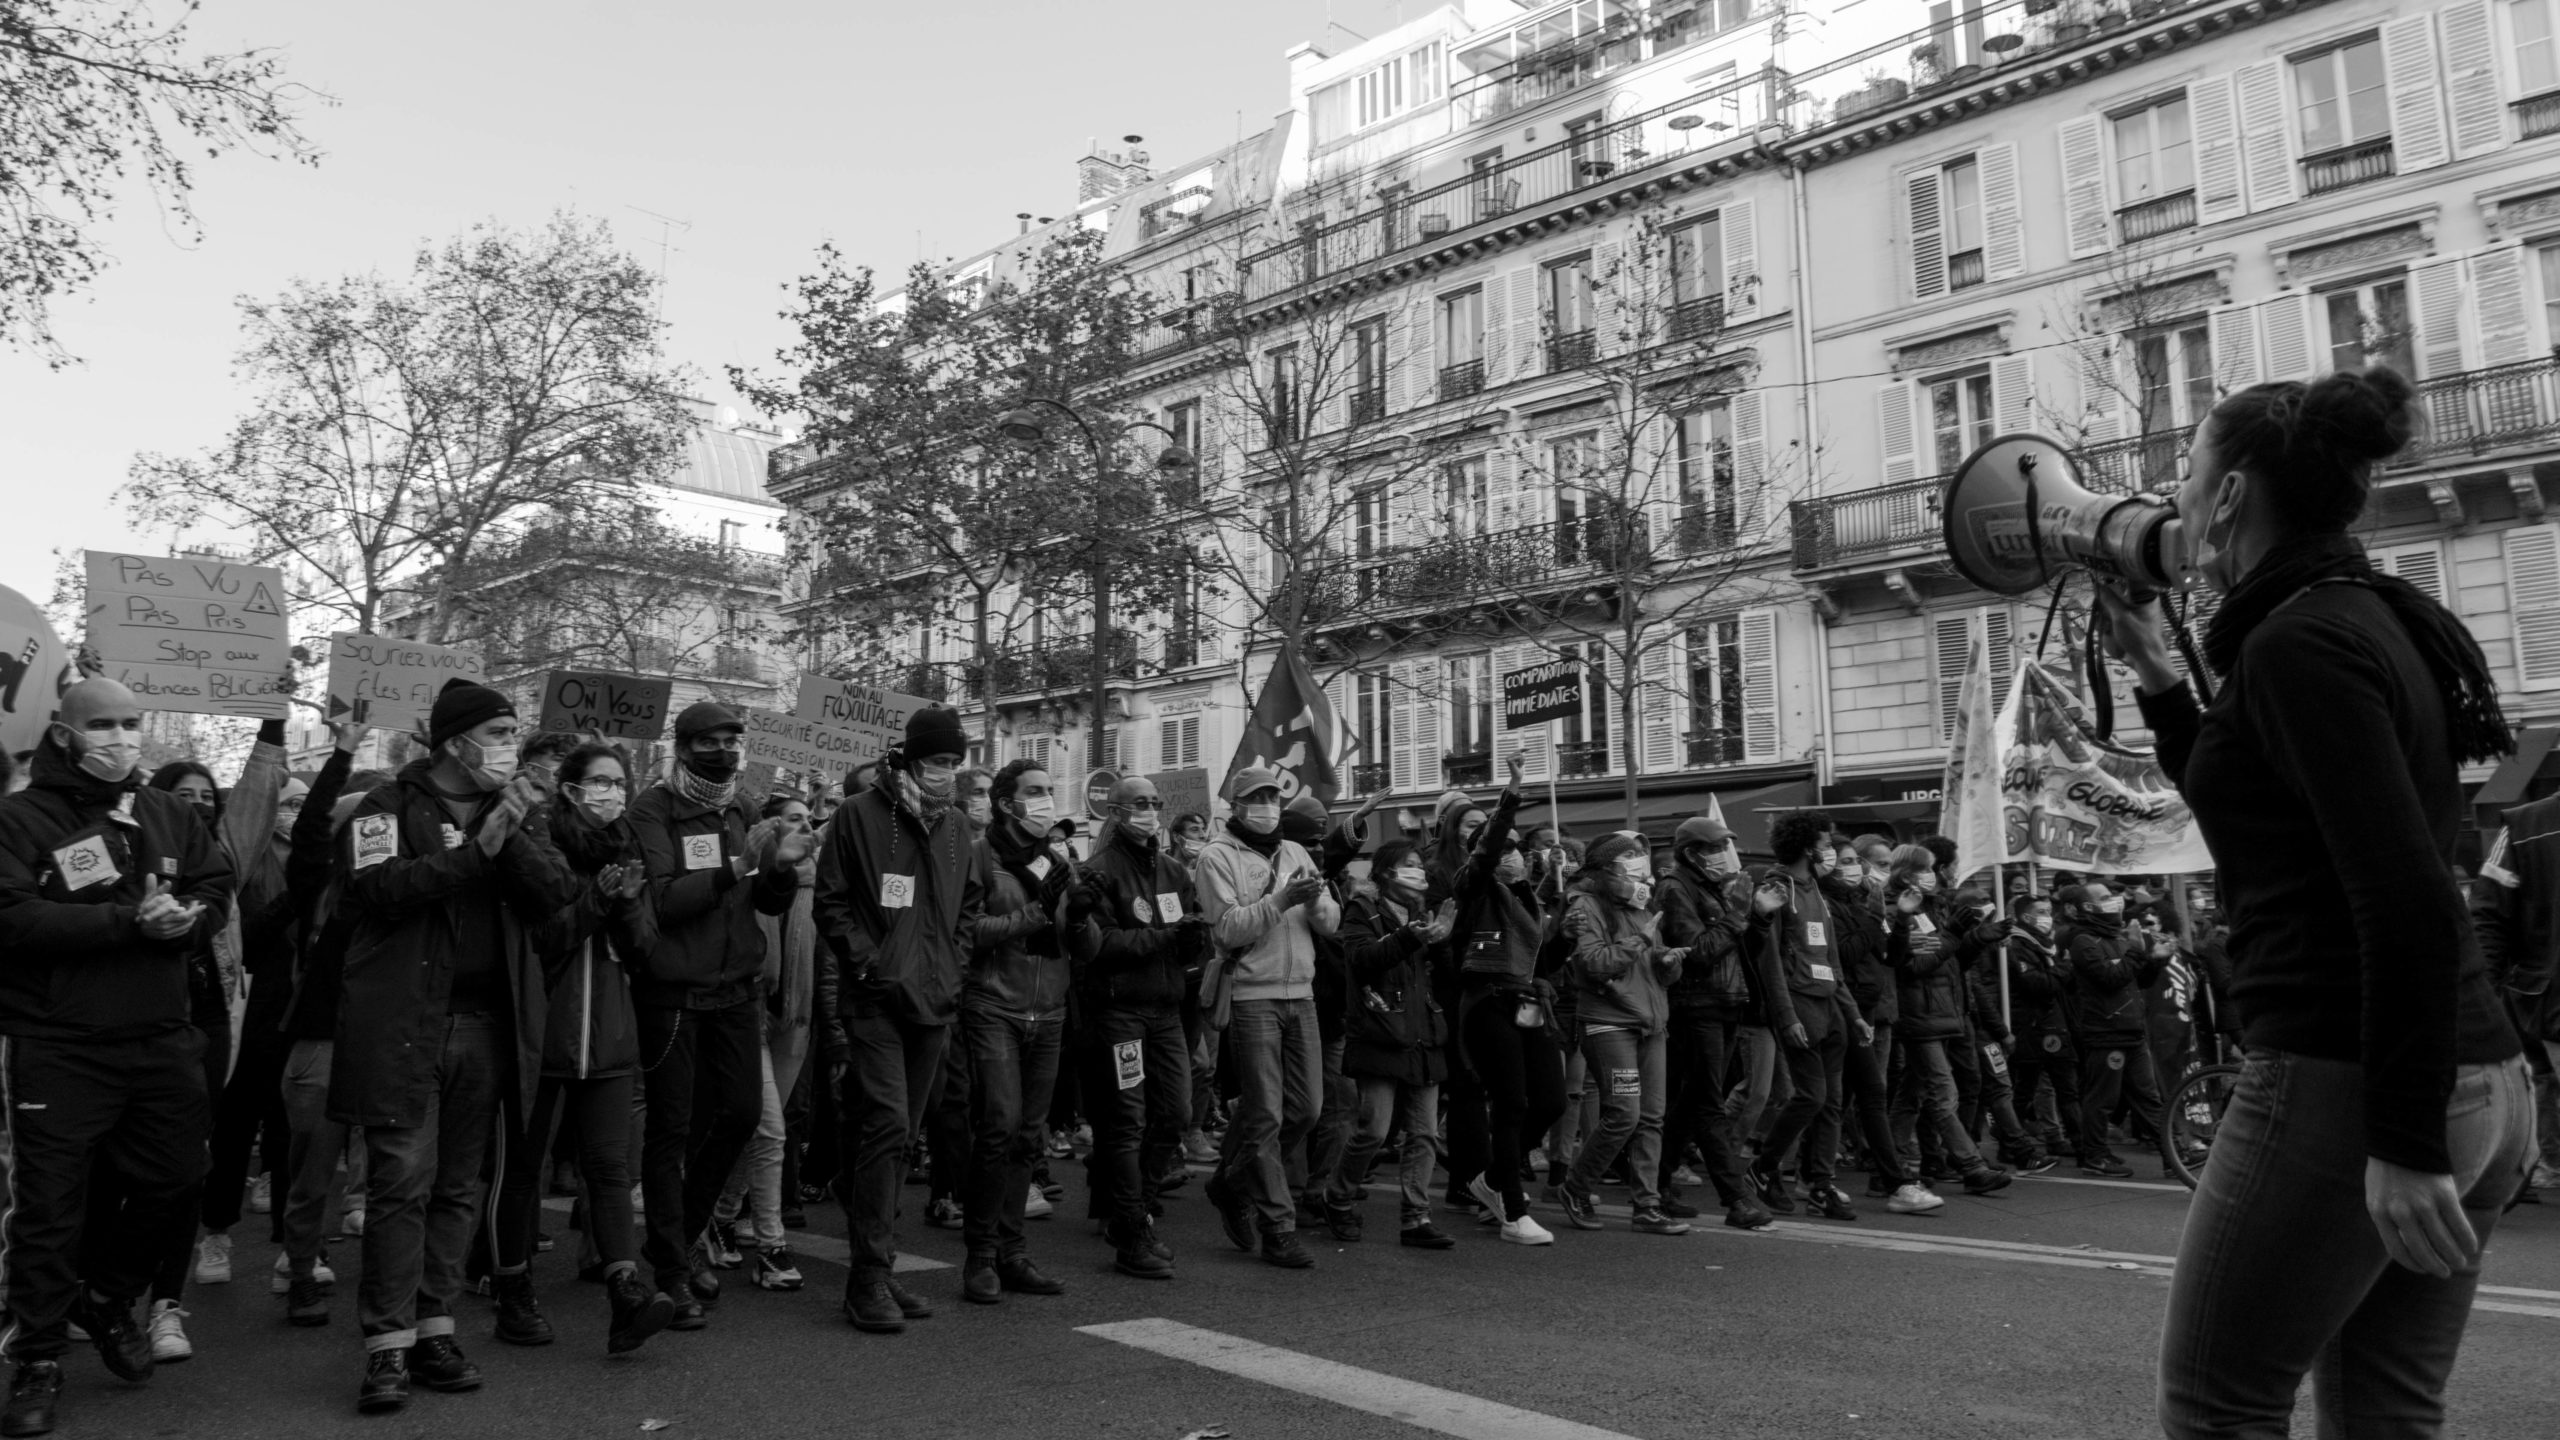 La manifestation débutera à 14h à Arnaud Bernard. Crédit: CC BY-SA 4.0 de Jules* https://creativecommons.org/licenses/by-sa/4.0/deed.en